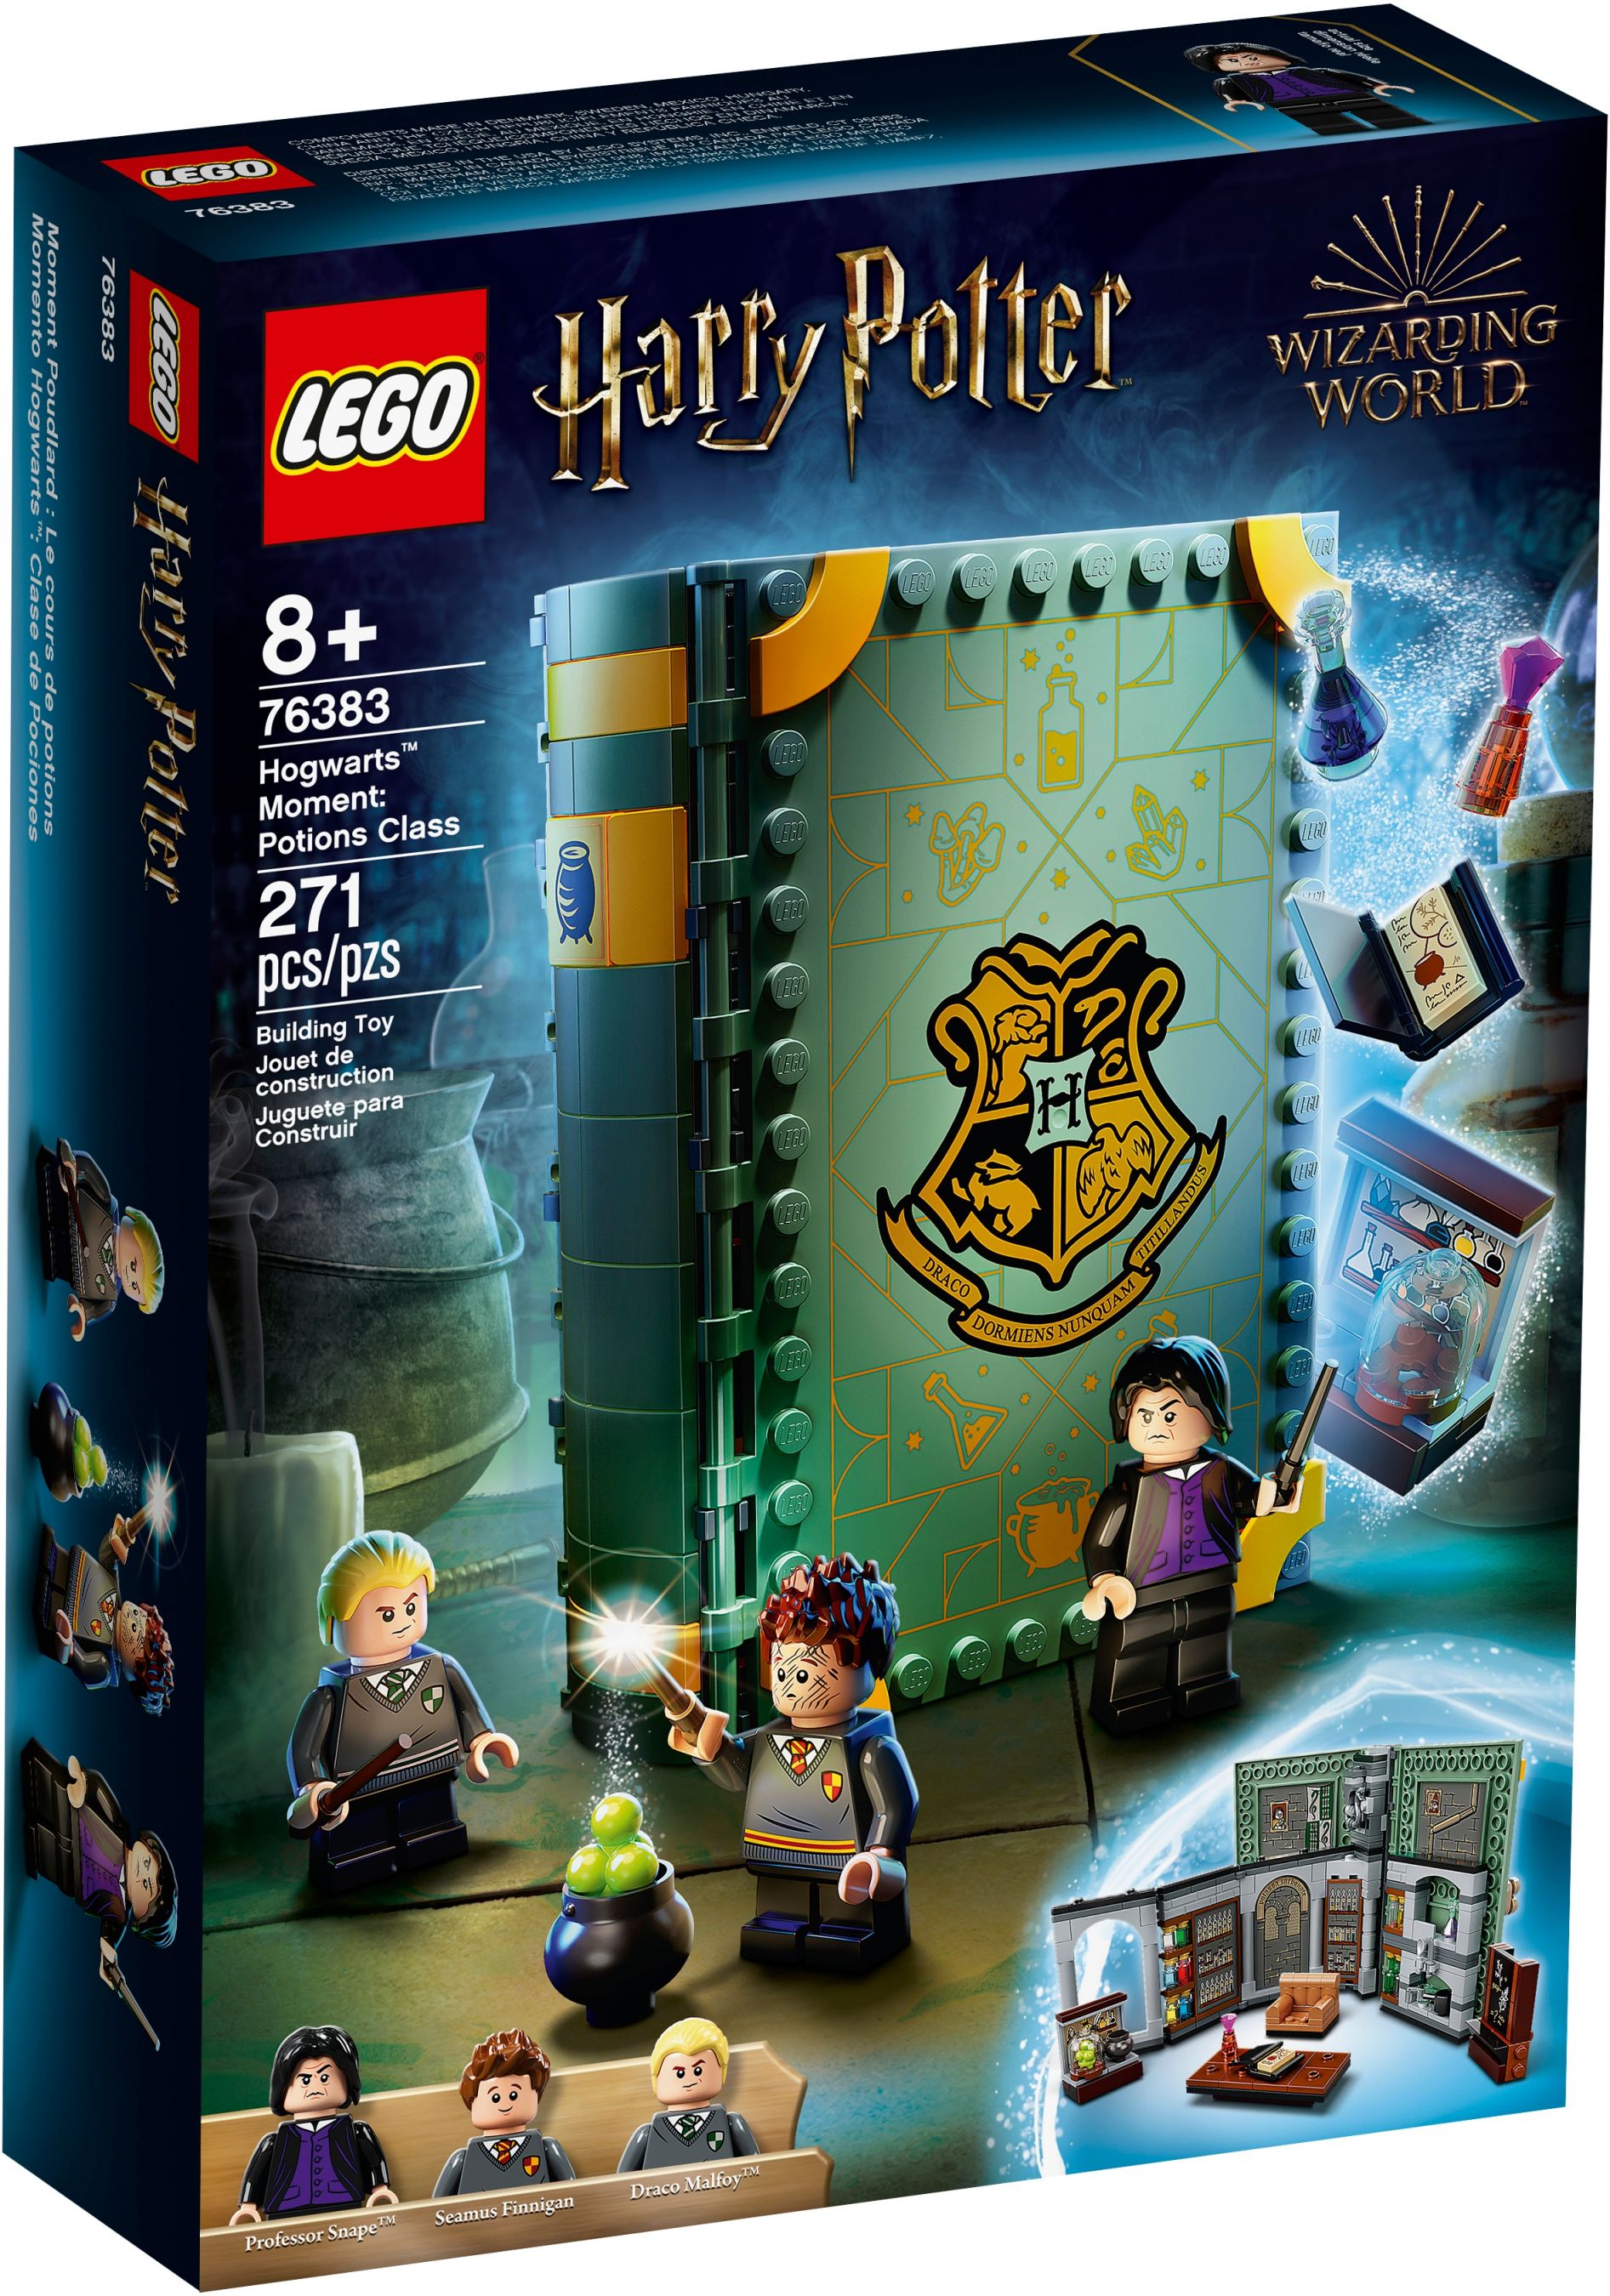 LEGO Harry Potter 76383 Hogwarts™ Moment: Zaubertrankunterricht LEGO_76383_box1_v39.jpg